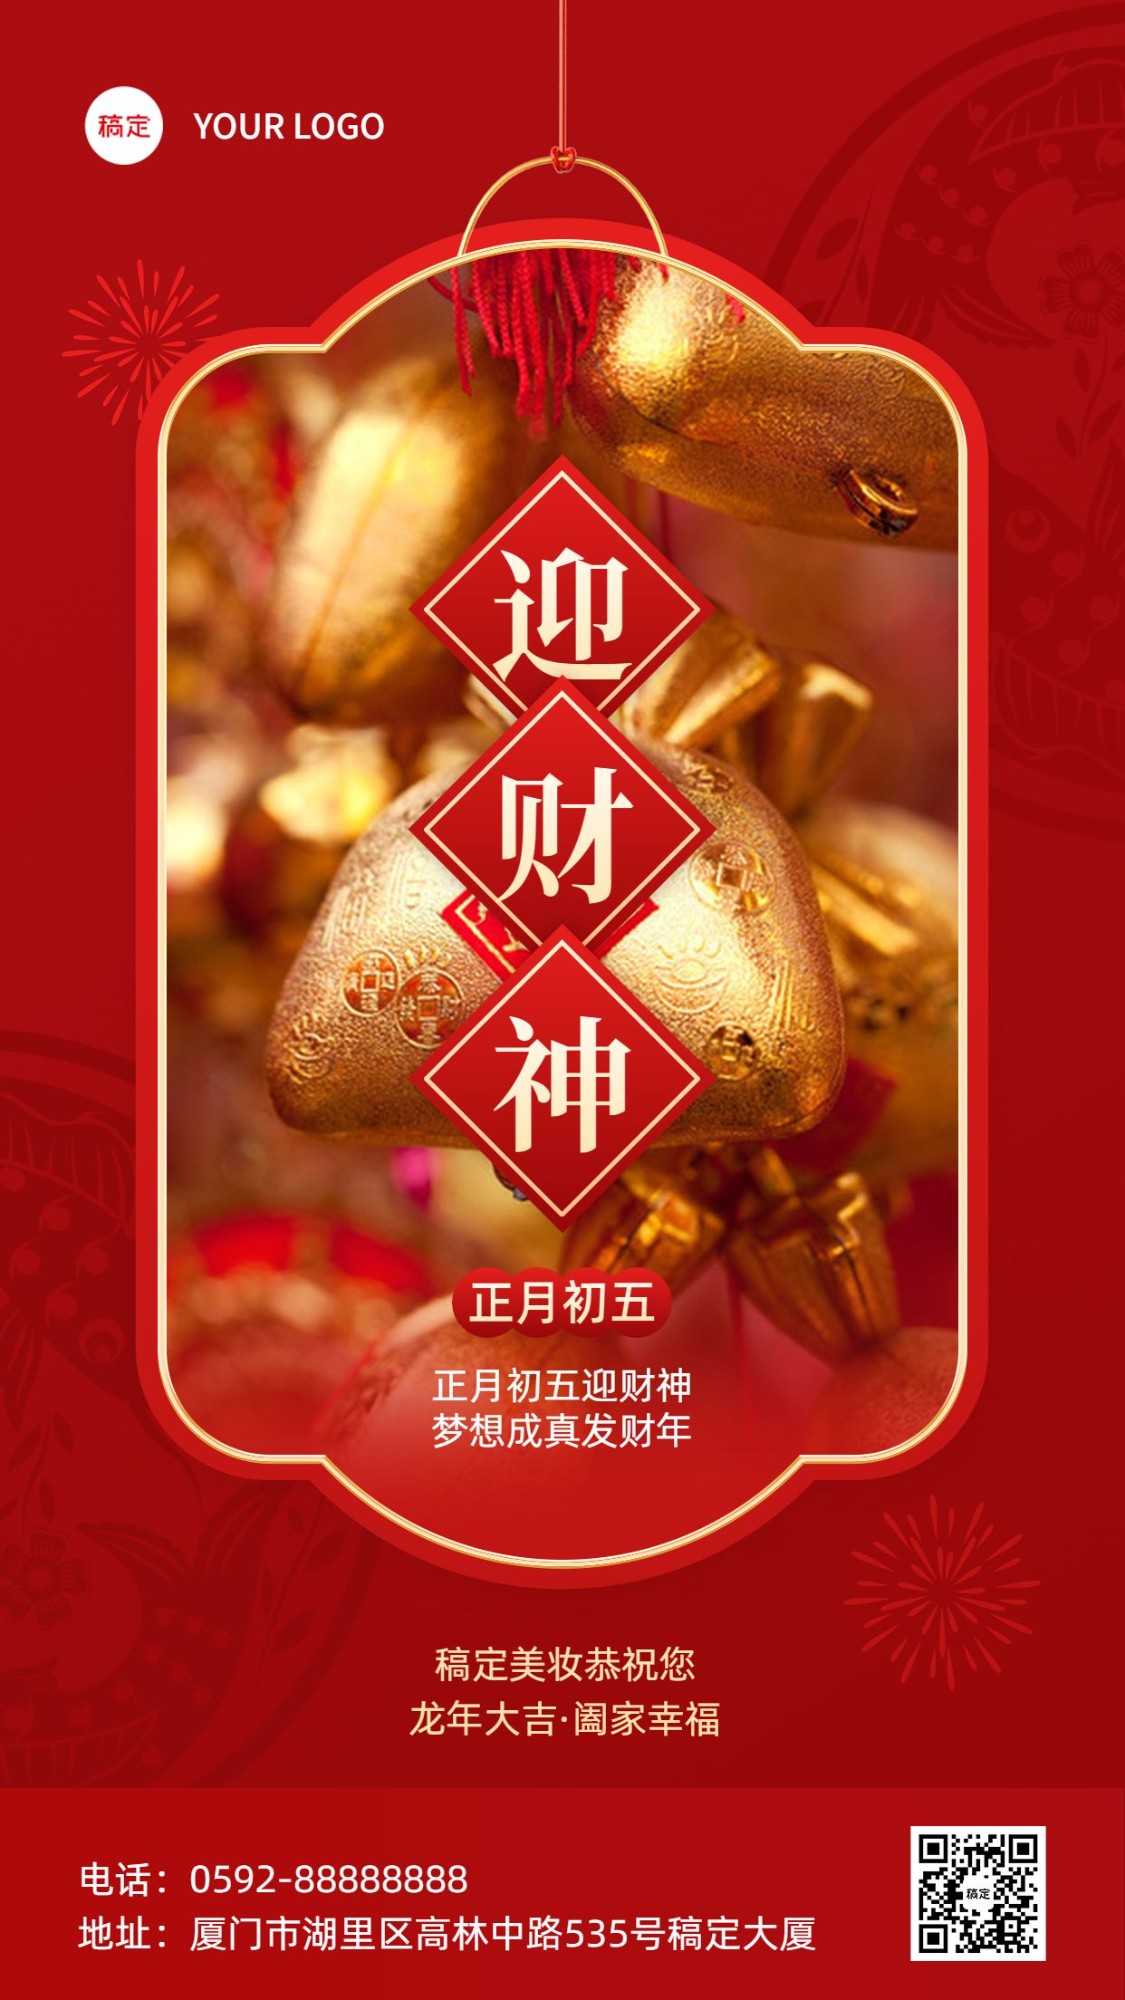 春节正月初五美容美妆迎财神节日祝福中式喜庆感套装竖版海报预览效果